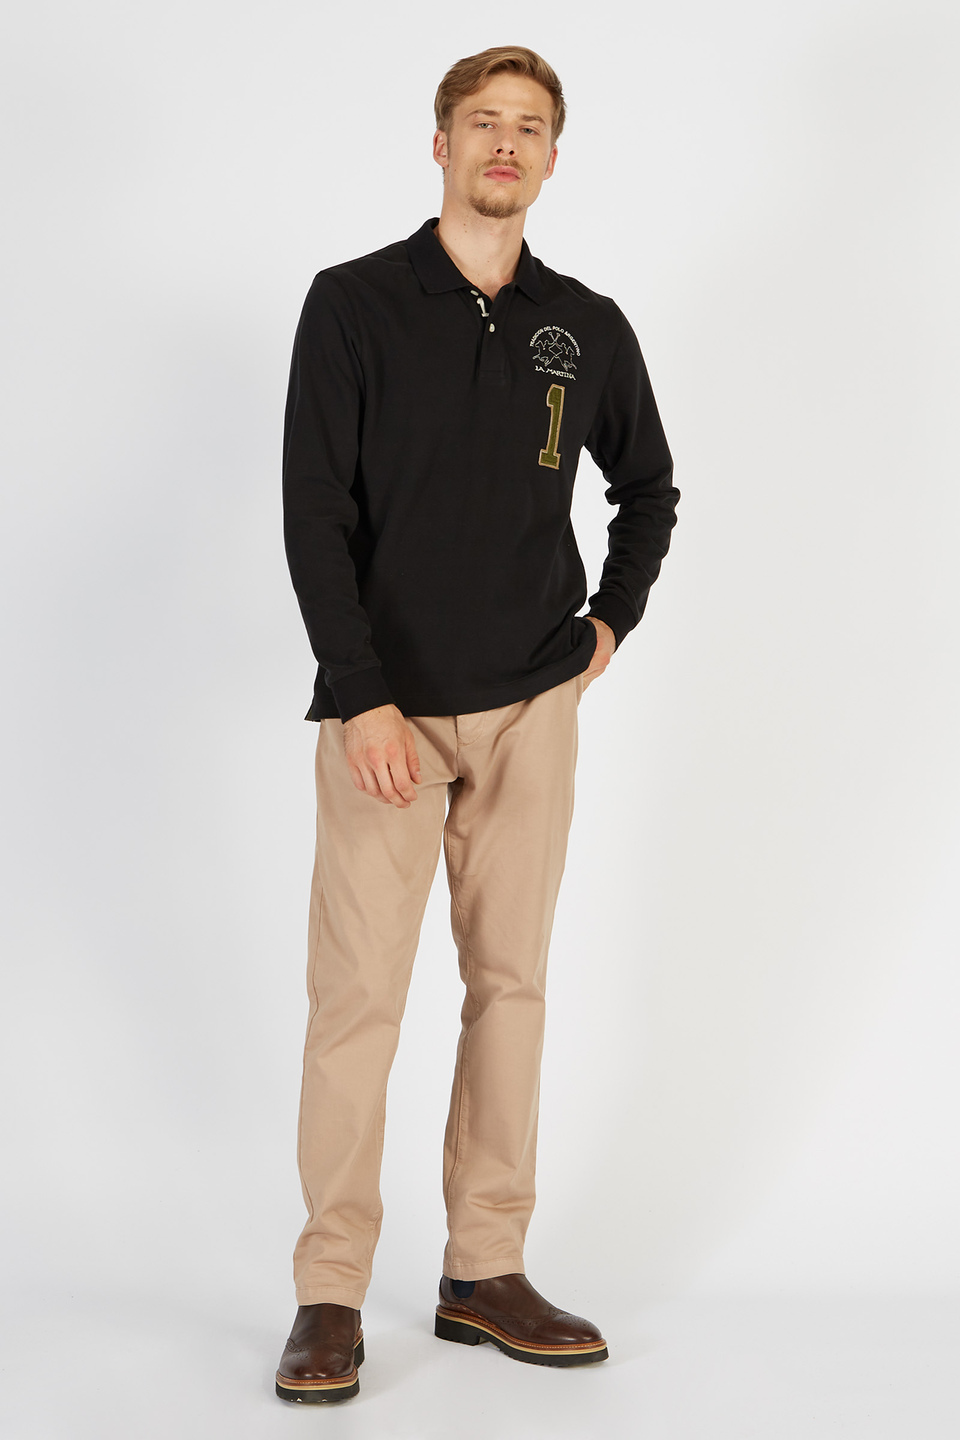 Herren-Poloshirt Iconos mit langen Ärmeln aus Baumwolle | La Martina - Official Online Shop